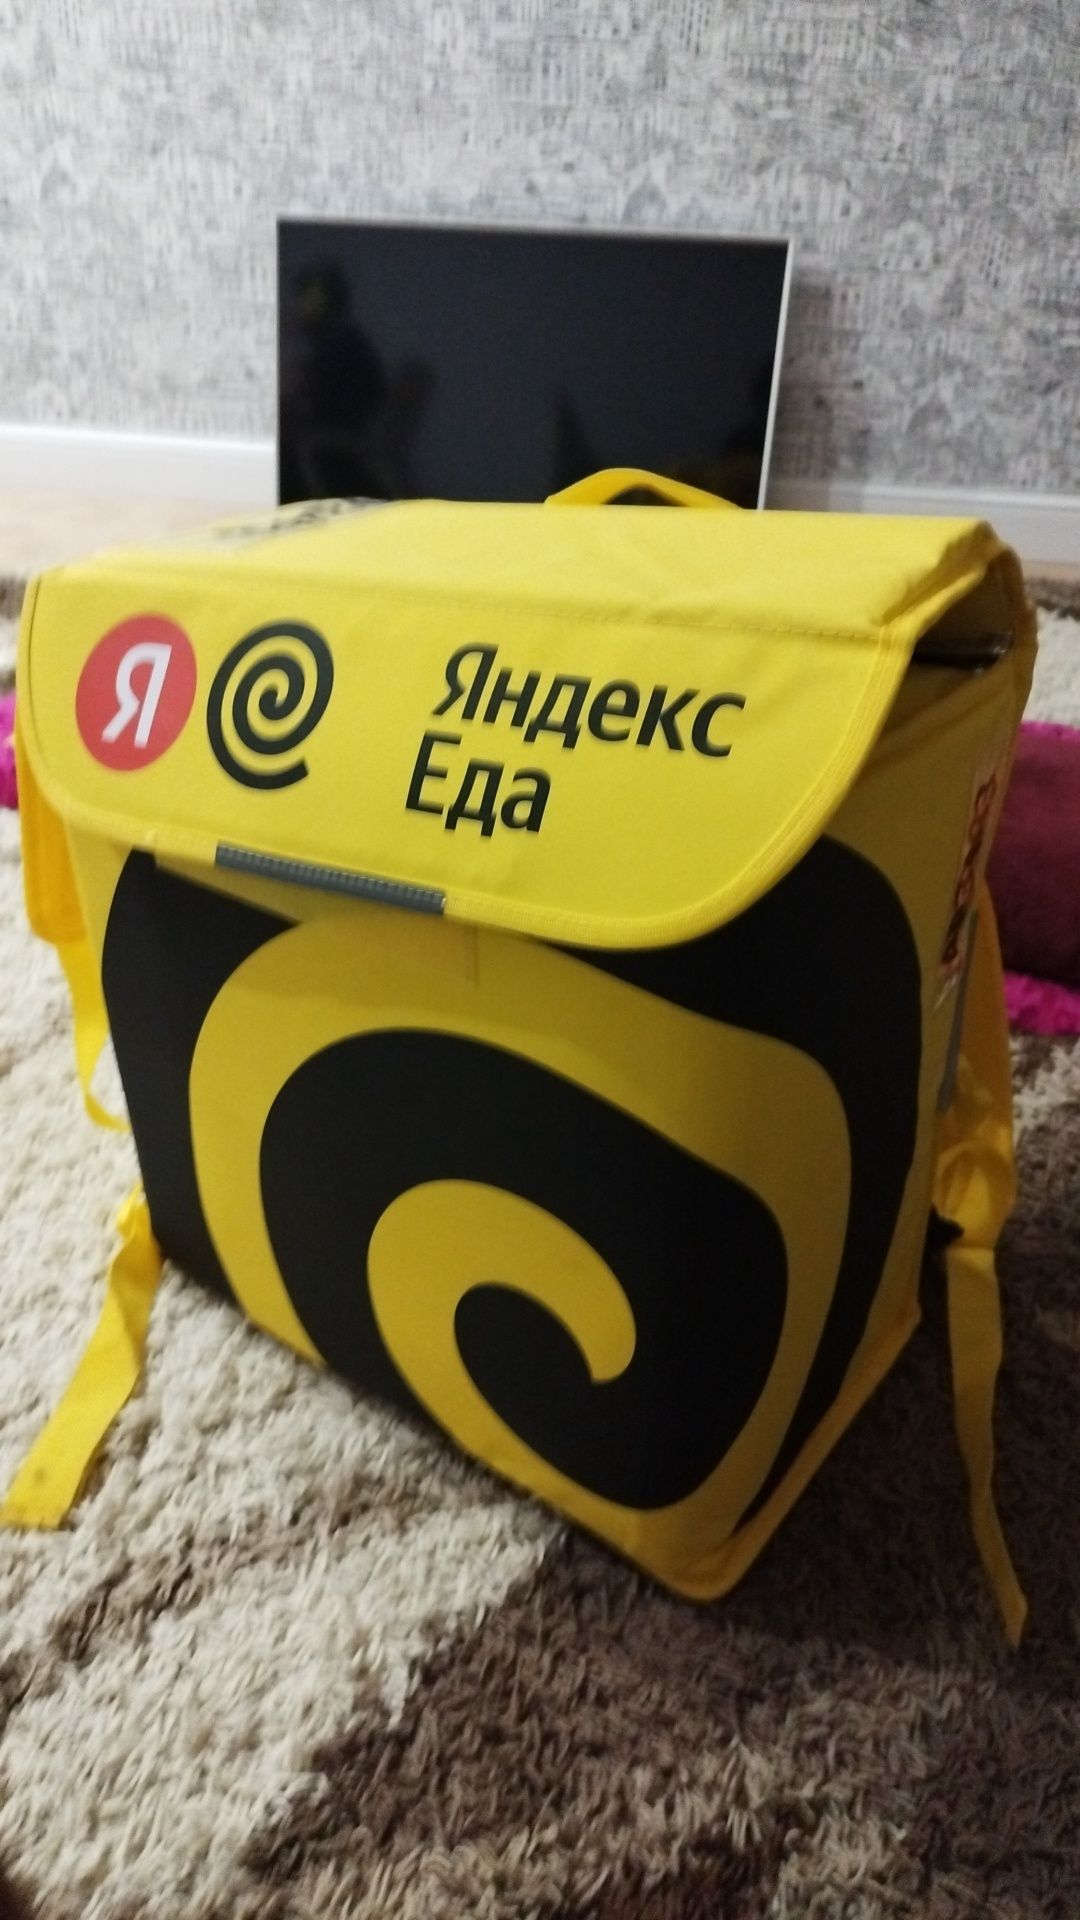 Яндекс Термокороб